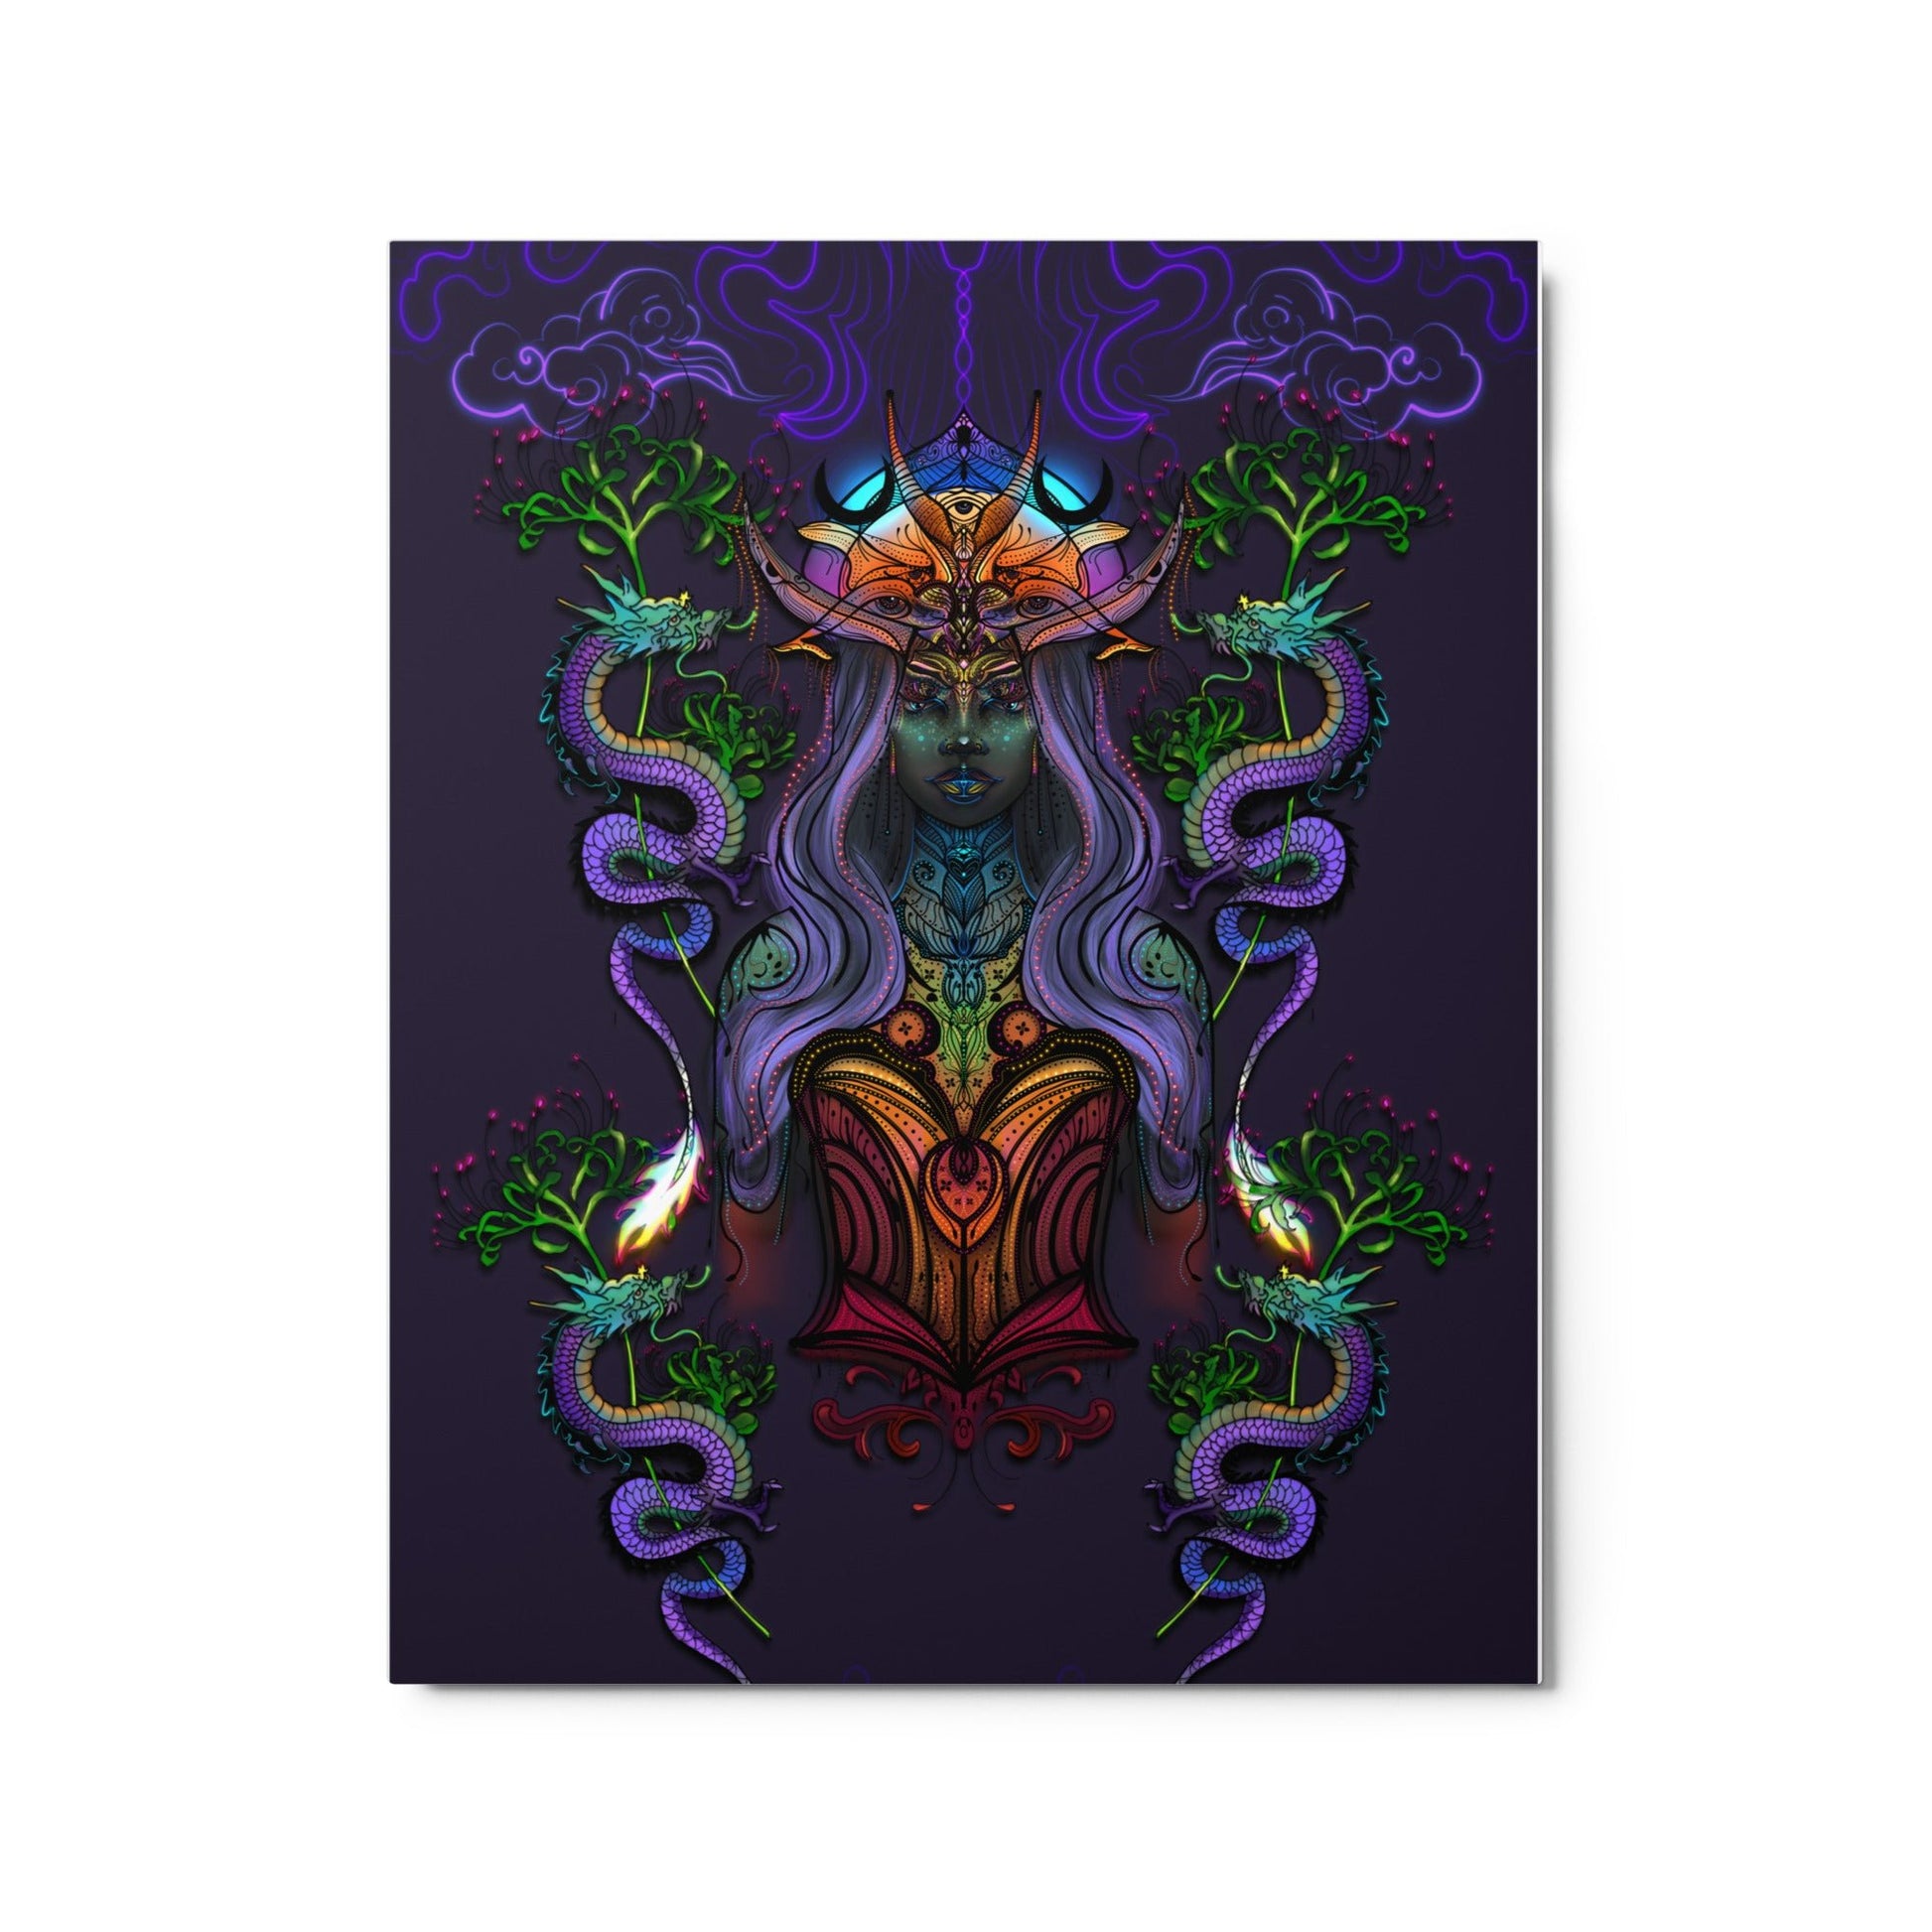 The Dragon Goddess - Metal print - 1111Arts